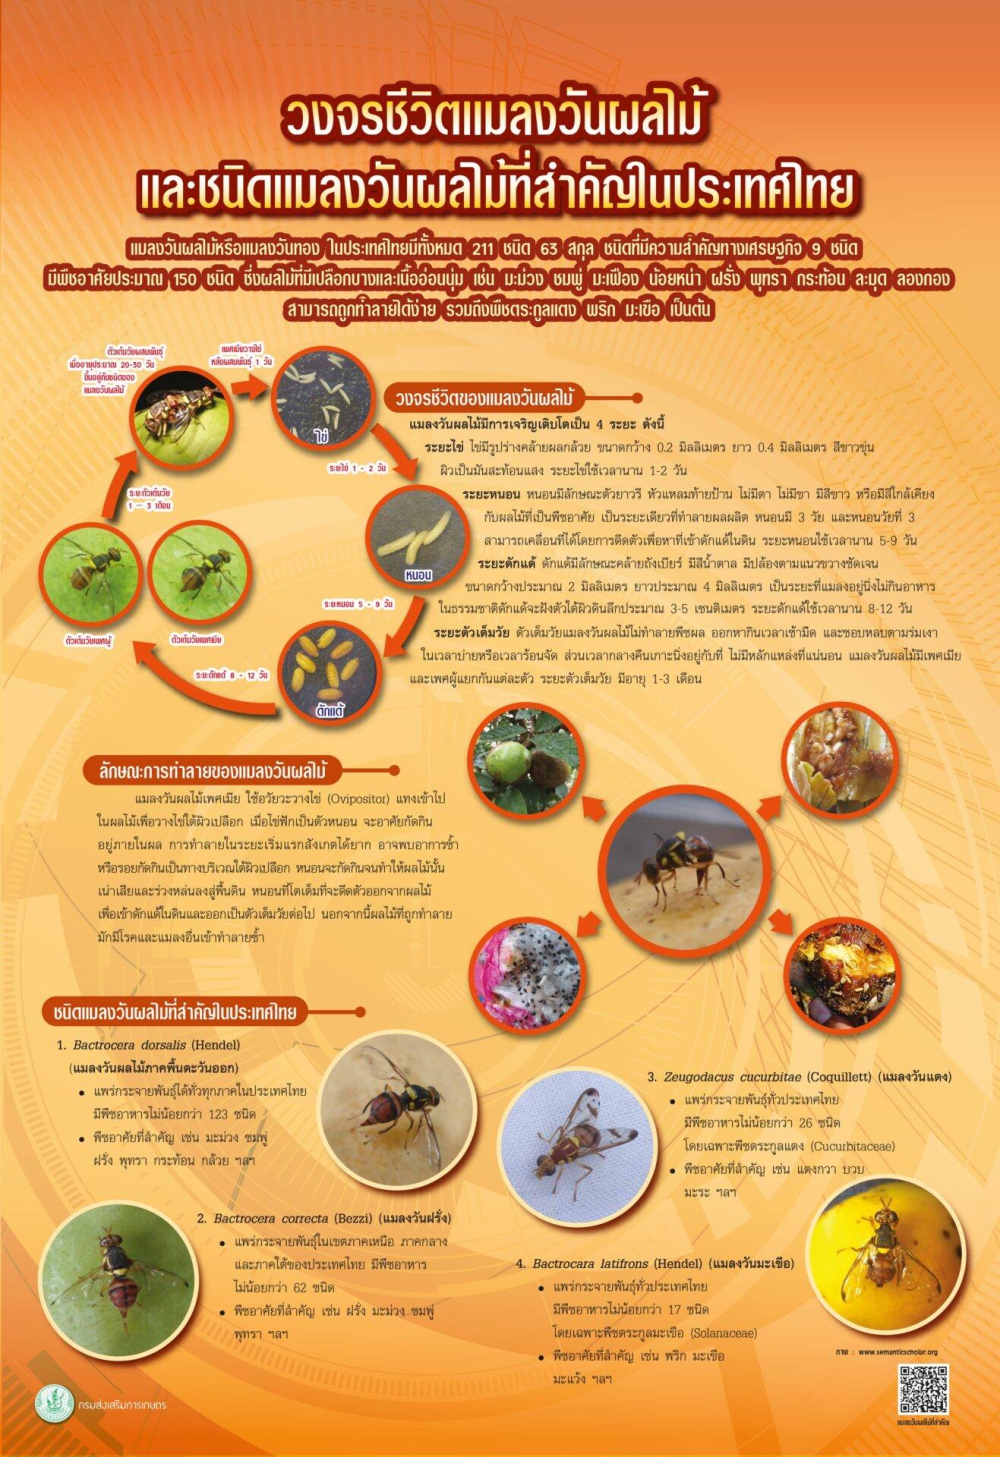 วงจรชีวิตแมลงวันผลไม้